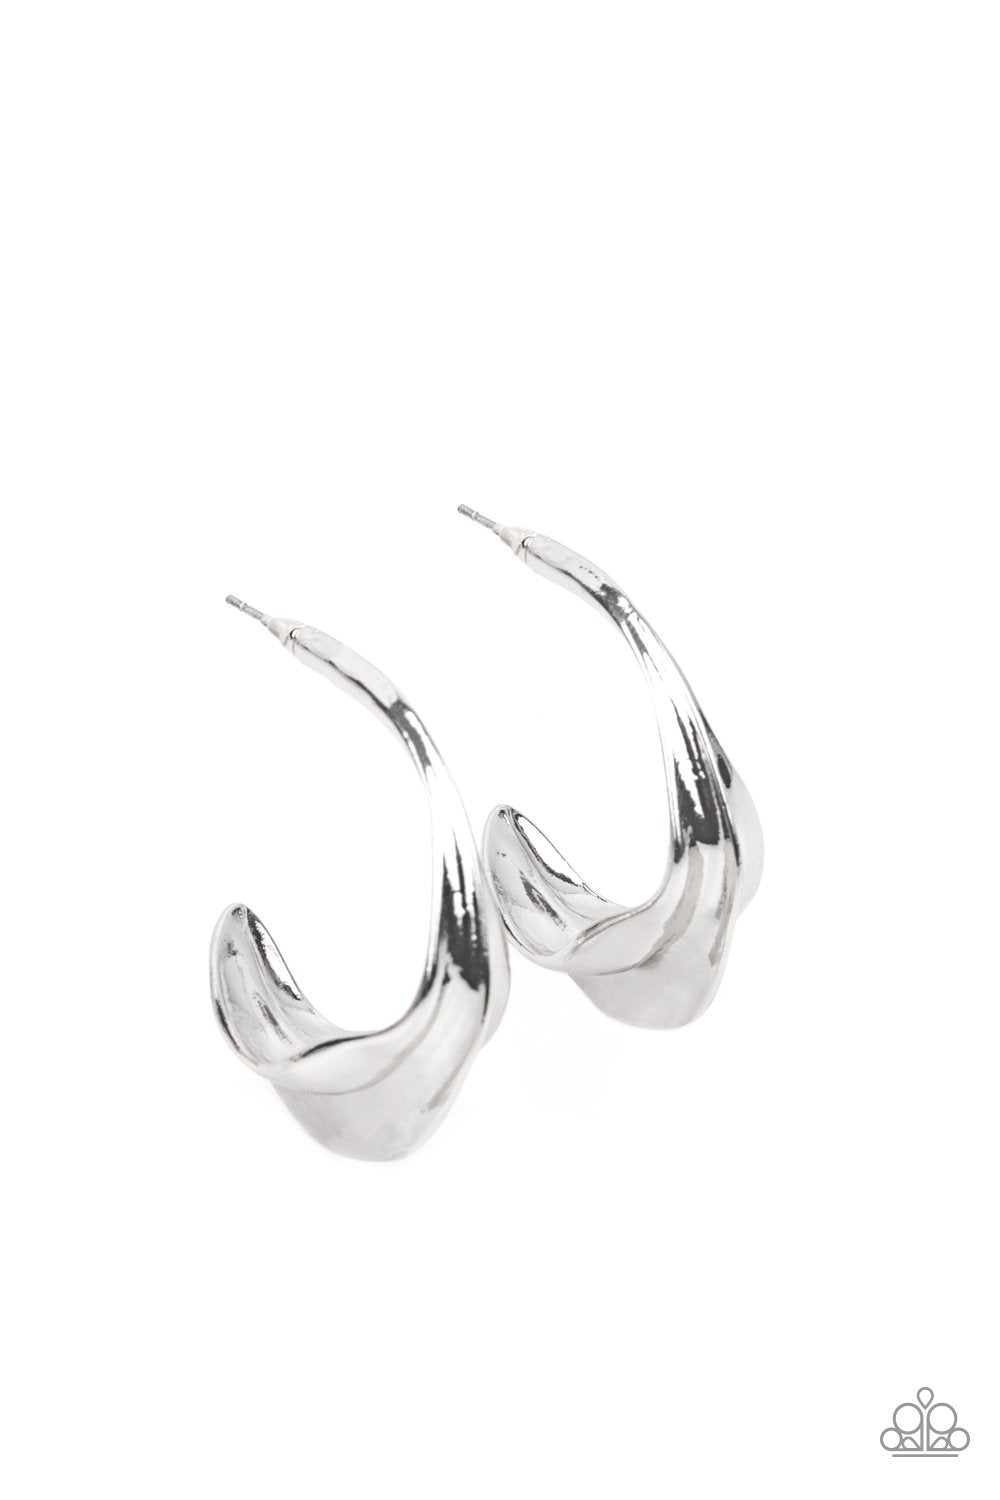 Modern Meltdown Silver Hoop Earrings - Daria's Blings N Things